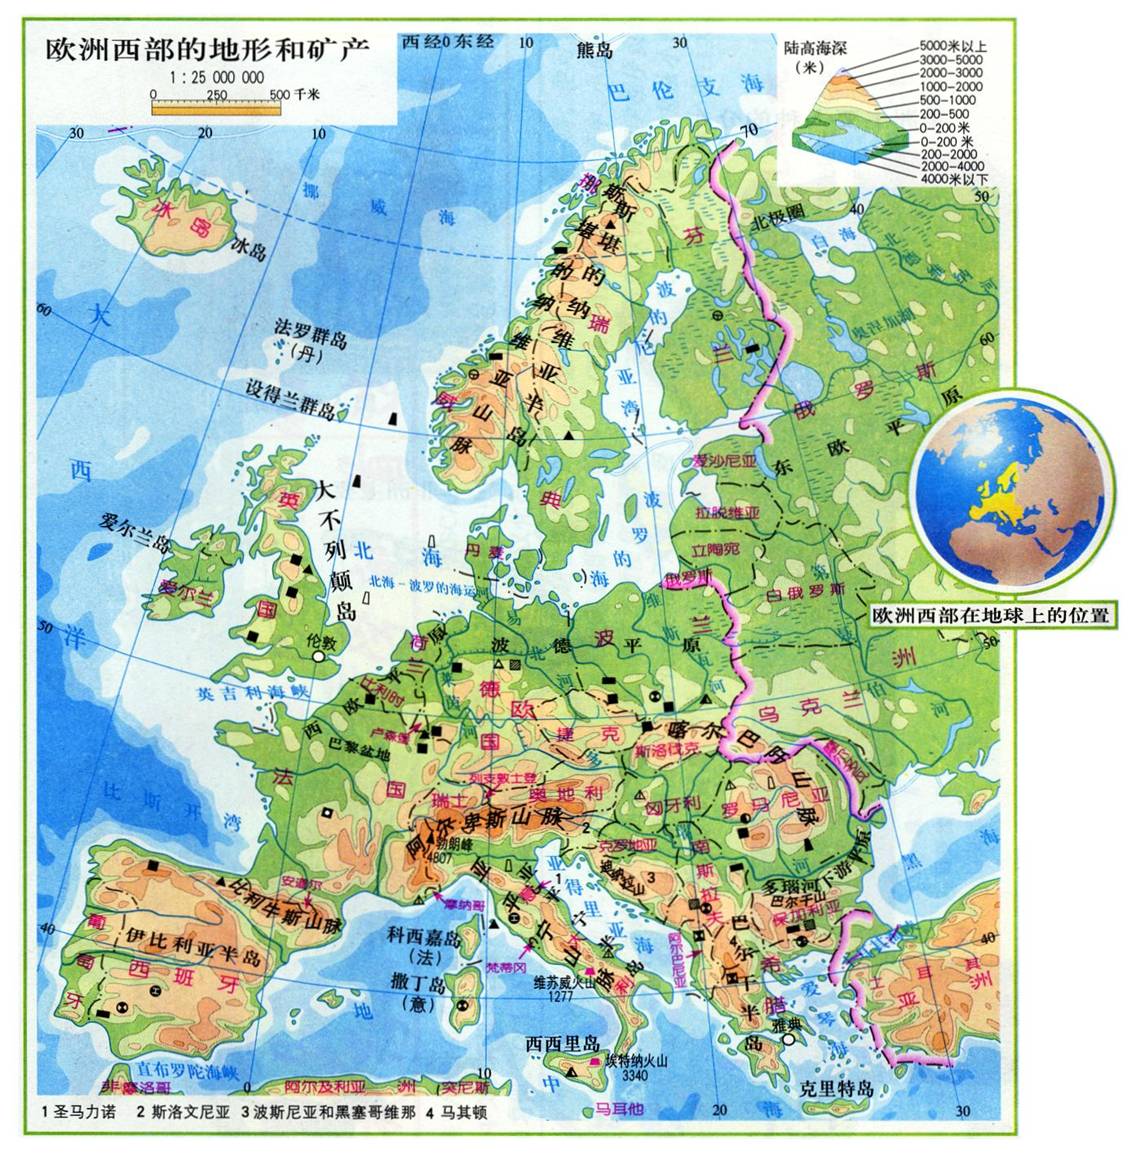 魏格纳假说远古地球之中欧地区